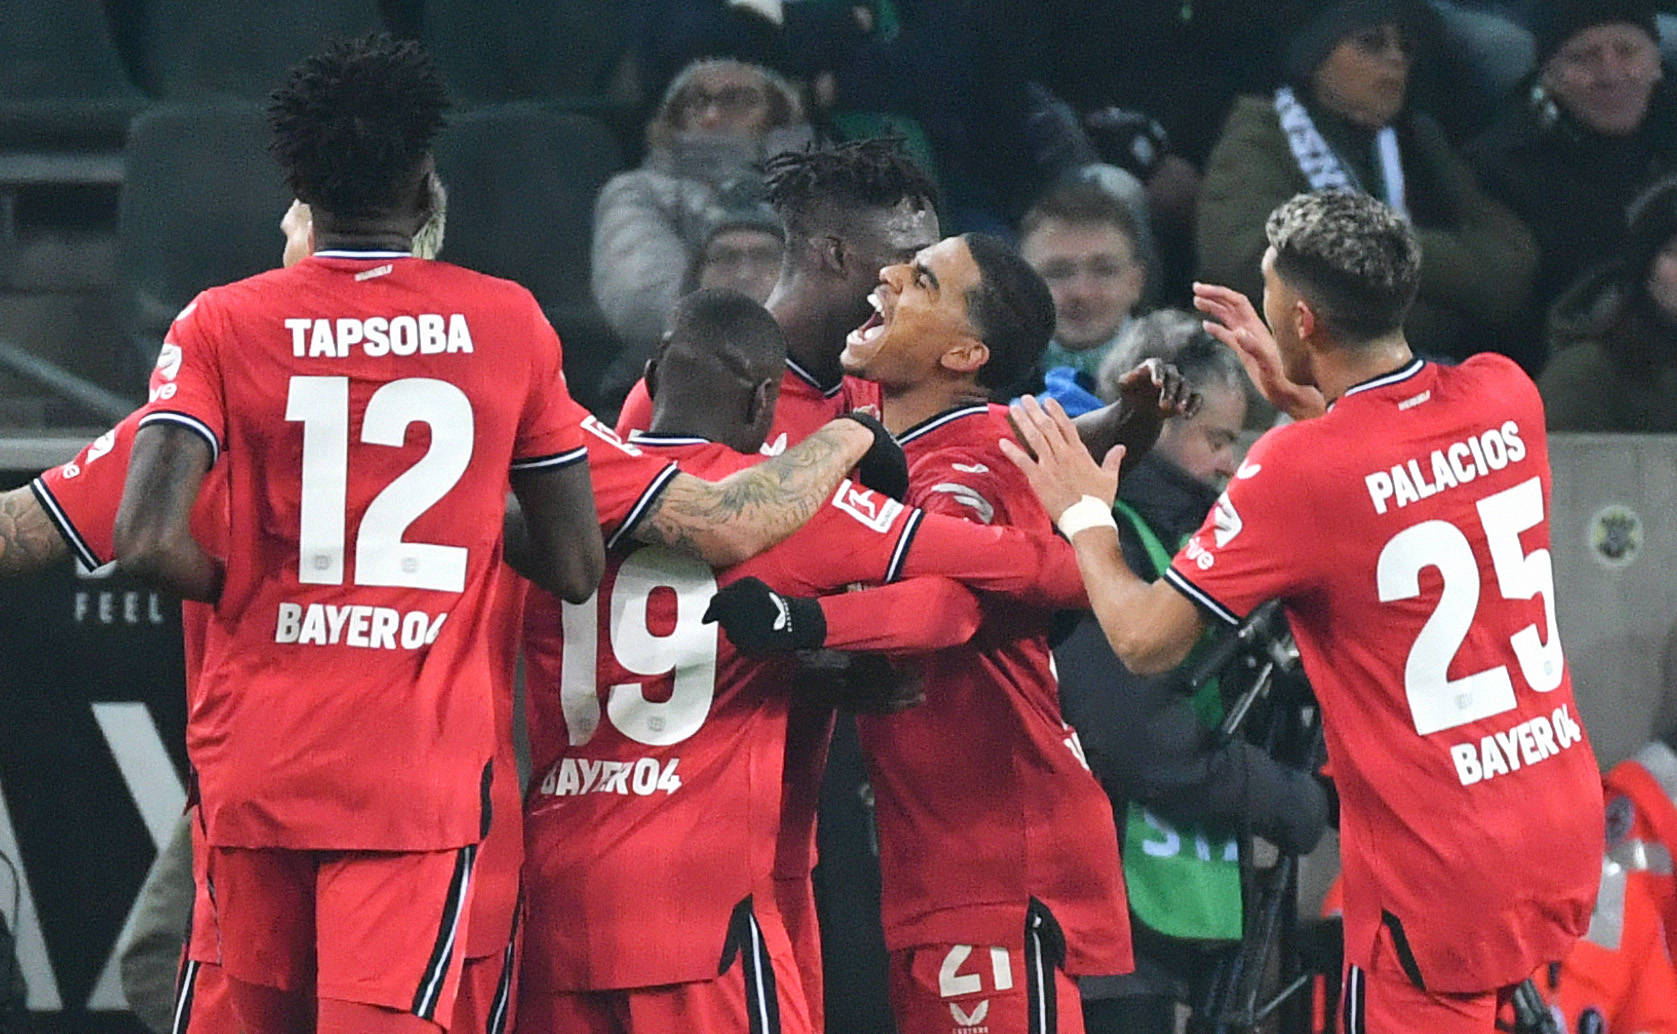 Bayer Leverkusens Profis feierten ihren vierten Sieg in Folge.